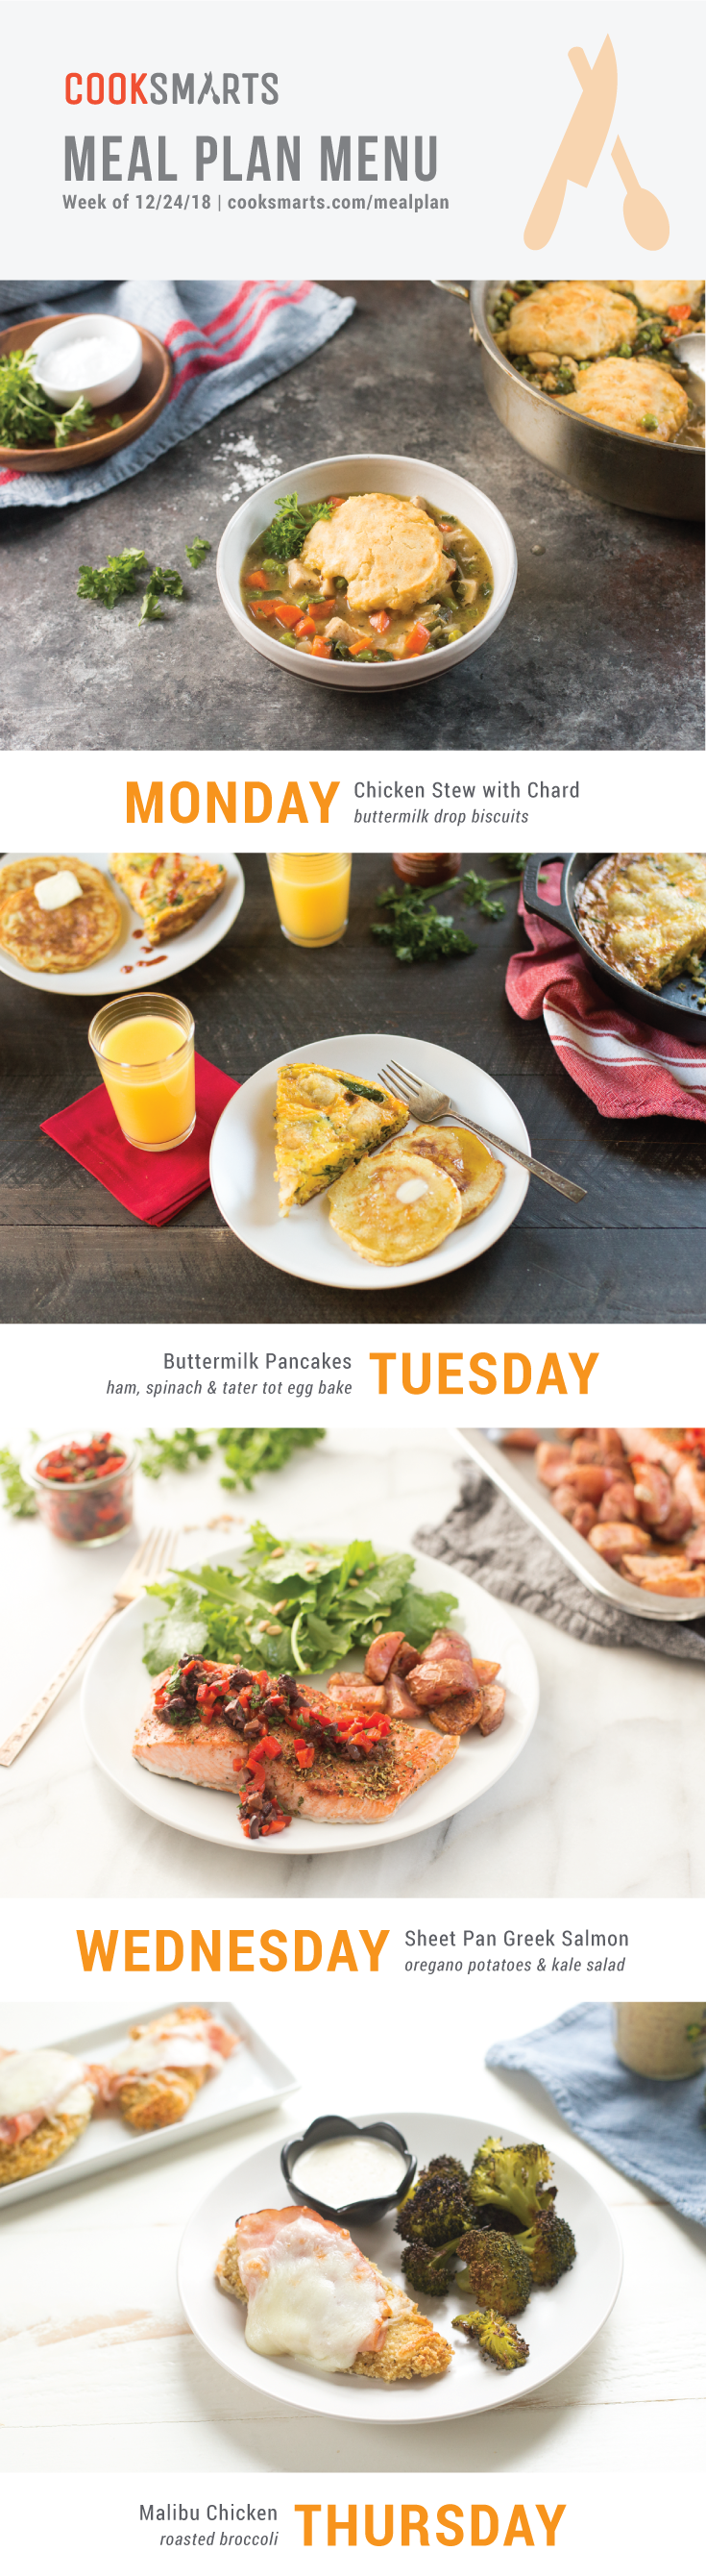 Weekly Meal Planner | Menu for Week of 12/24/18 via Cook Smarts